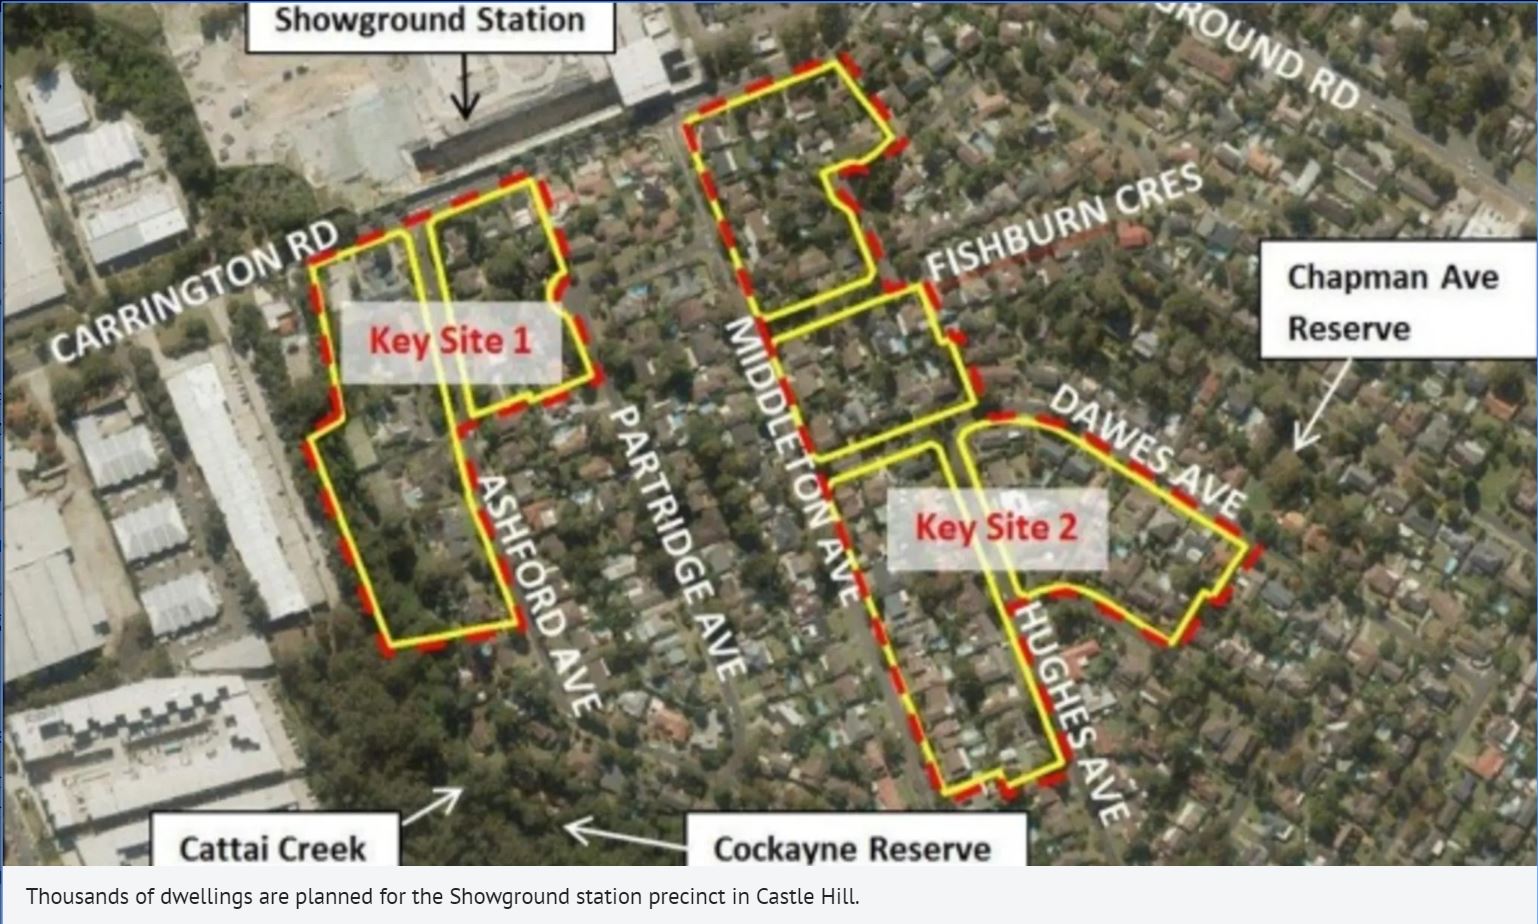 Plans for higher-density development at Showground station hub knocked back  |  Thiink Market Update